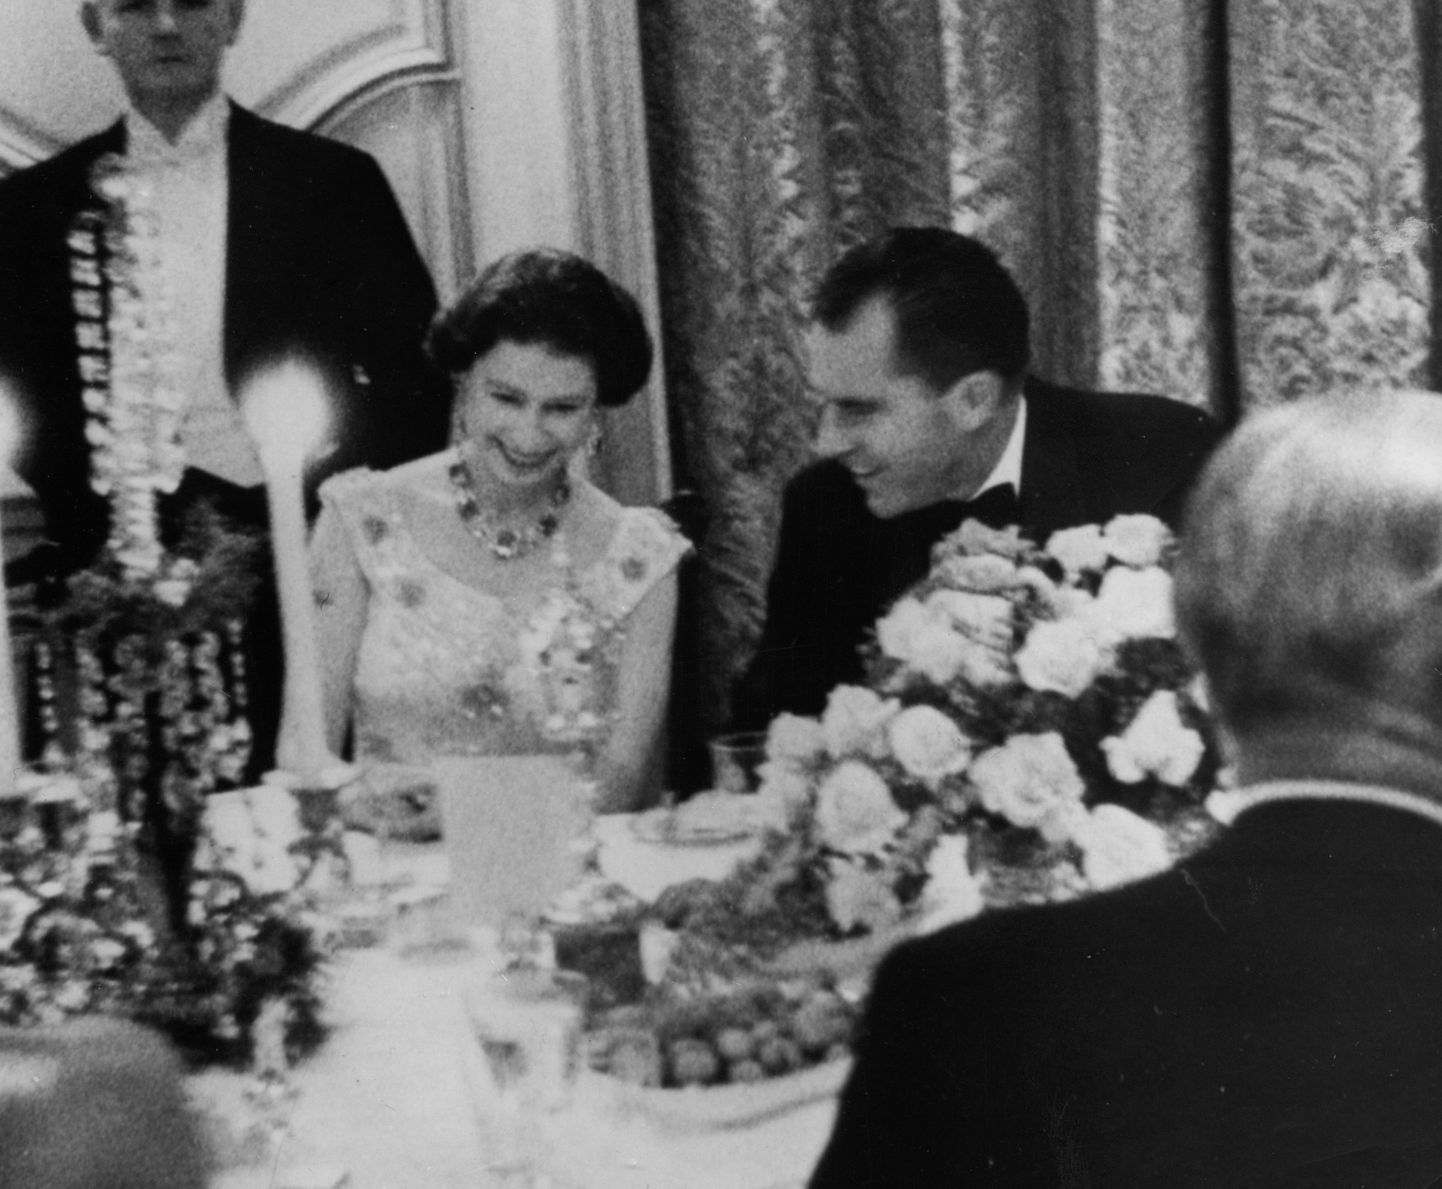 Kuninganna Elizabeth II ja toonane Ameerika asepresident Richard Nixon tänupüha õhtusöögilauas 27. novembril 1958 Ameerika suursaadiku residentsis Winfield House'is, Regent Parkis, Londonis.